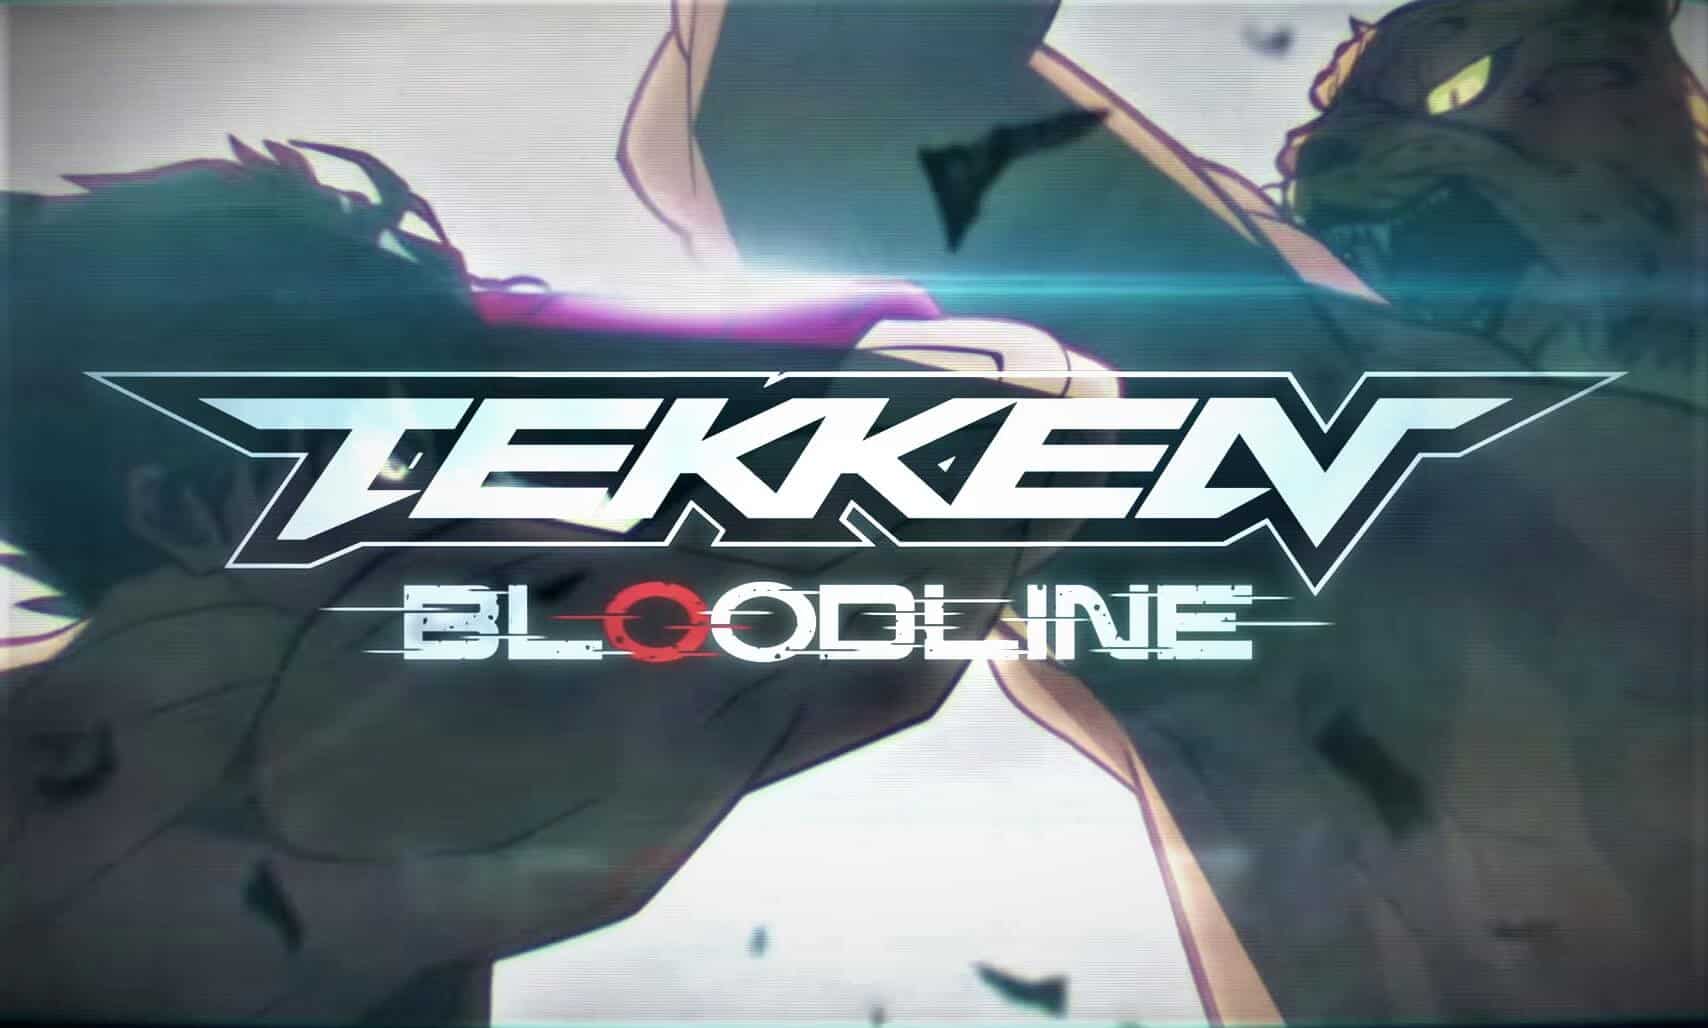 Netflix İşi Tekken: Bloodline 2022'de Çıkış Yapacak